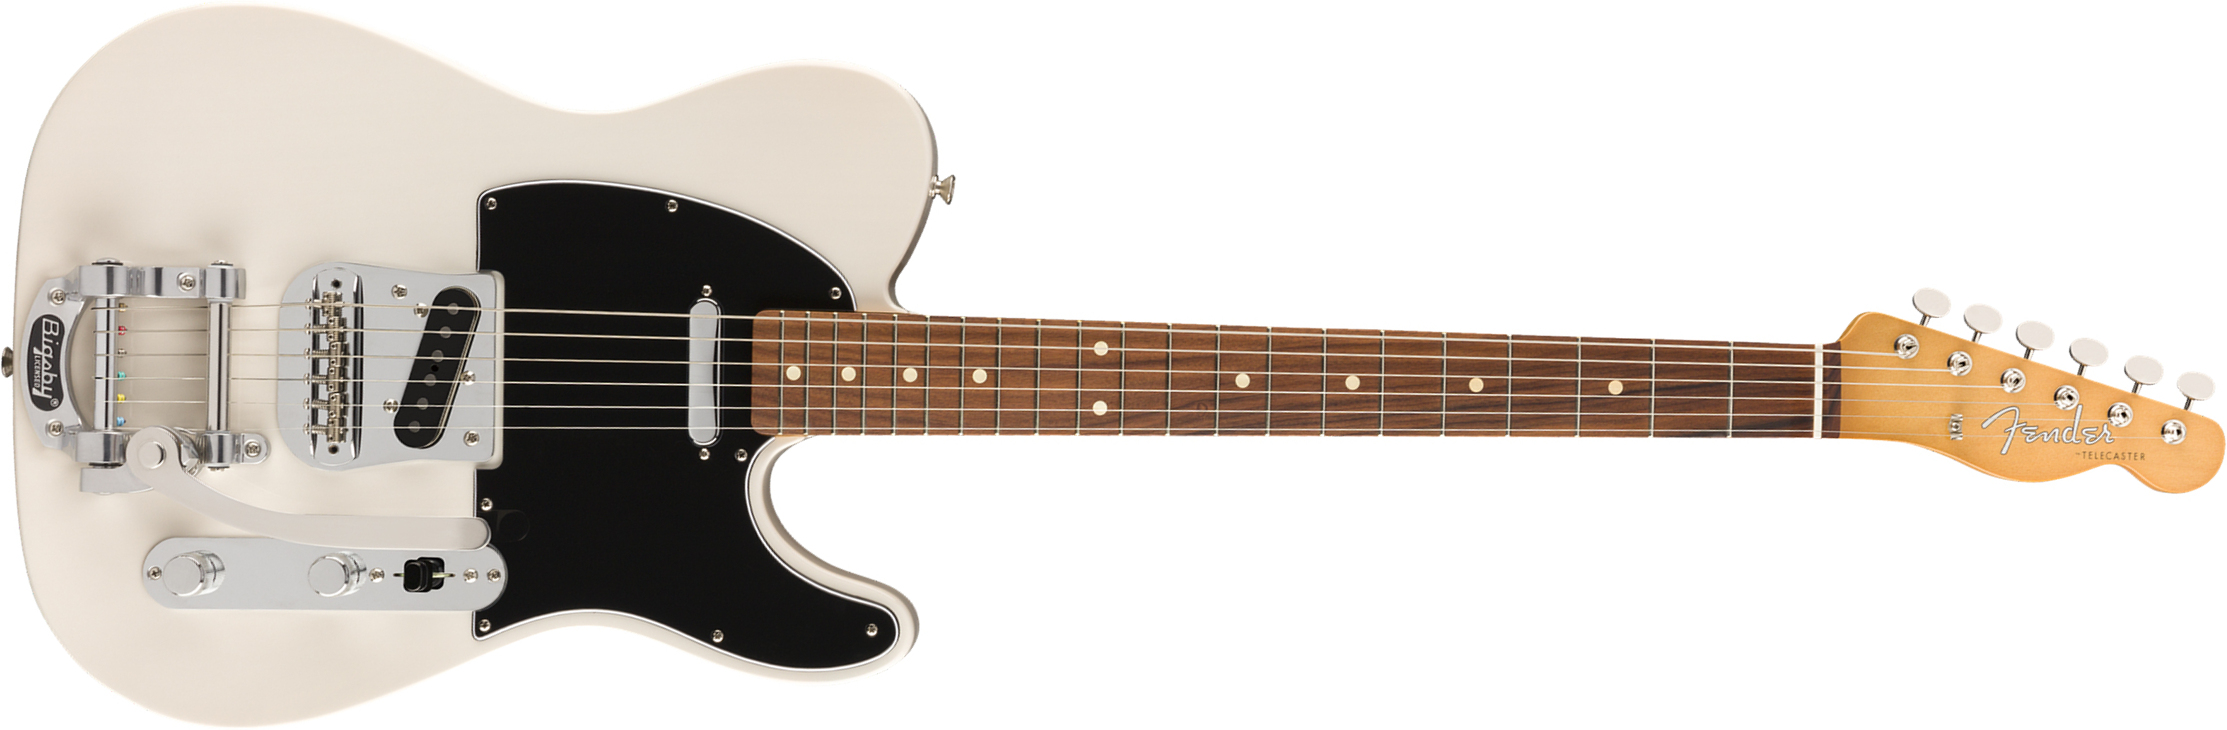 Fender Tele 60s Bigsby Vintera Vintage Mex Pf - White Blonde - Televorm elektrische gitaar - Main picture